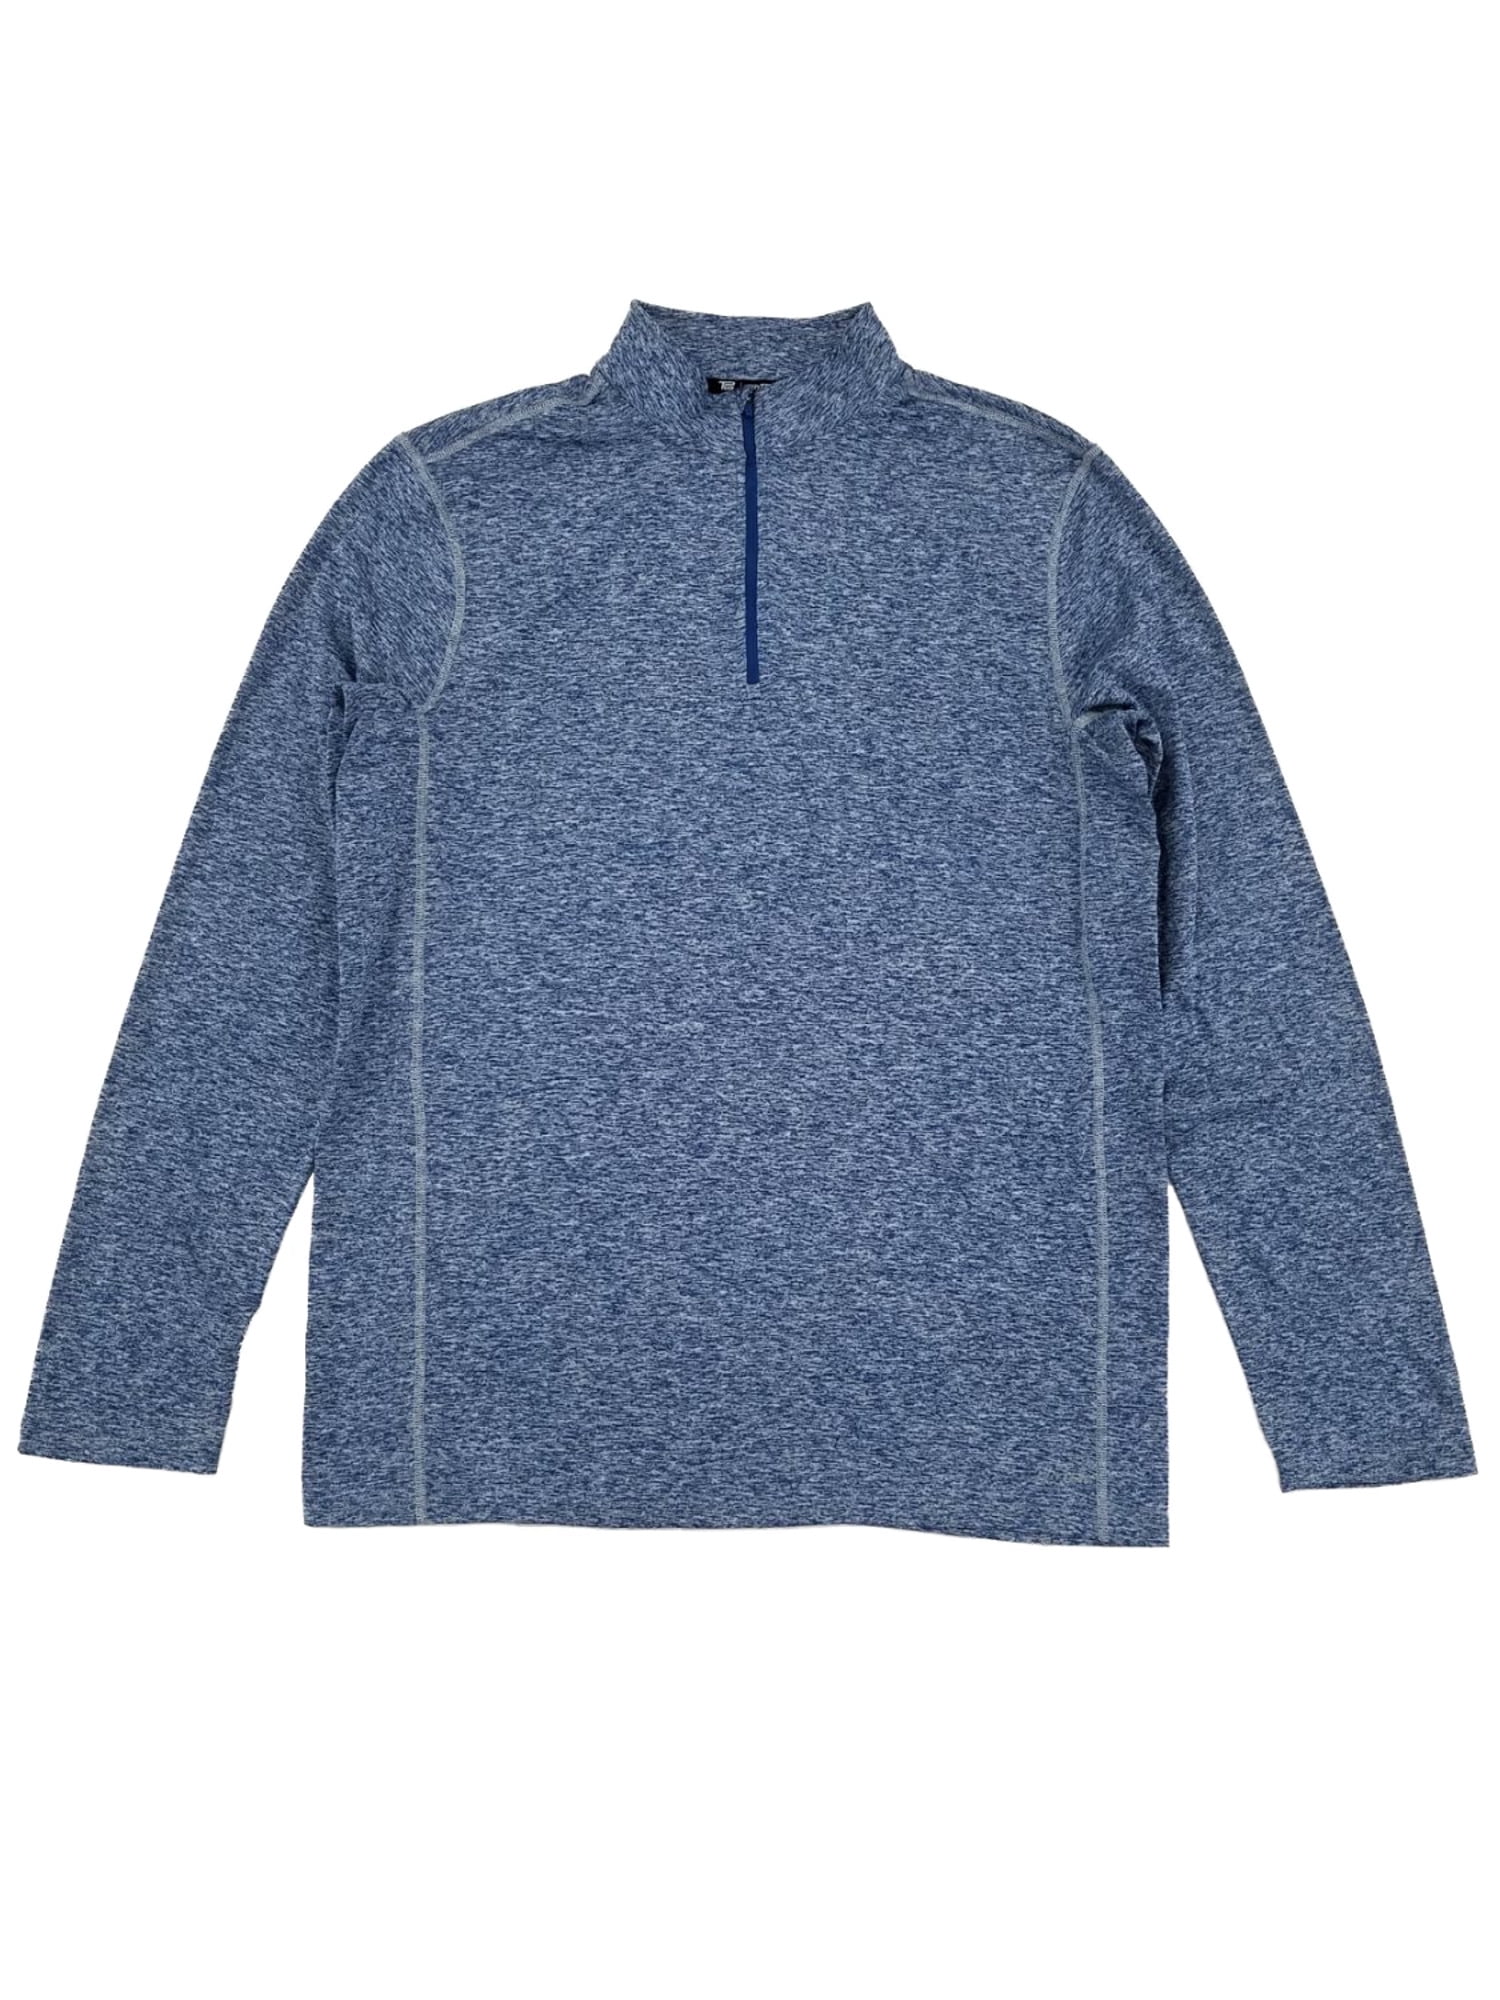 Tek Gear DryTek Mens Pullover Long Sleeve Shirt 1/4 Zip Blue Size Small